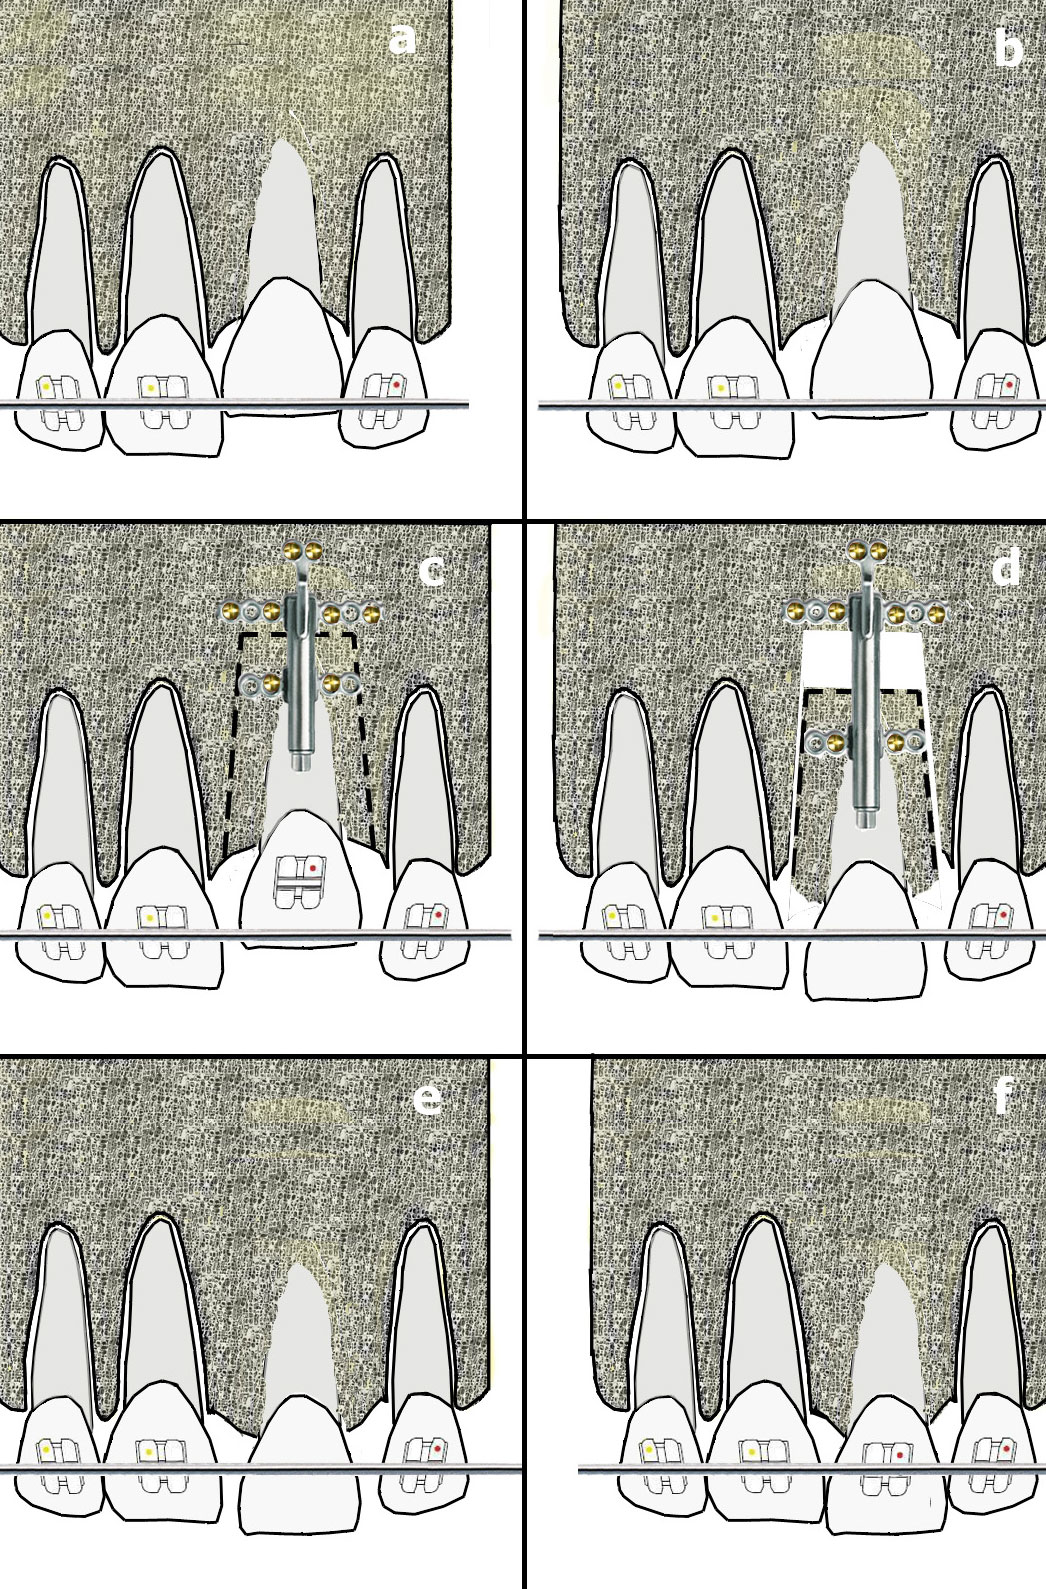 Şenışık ve Akalın 2016 Şekil 3 Tek diş dento-osseöz osteomisi ve kemik destekli alveoler distraksiyon: a. Ankiloze diş hariç tüm dişler braketlenir ve seviyelenir; b.